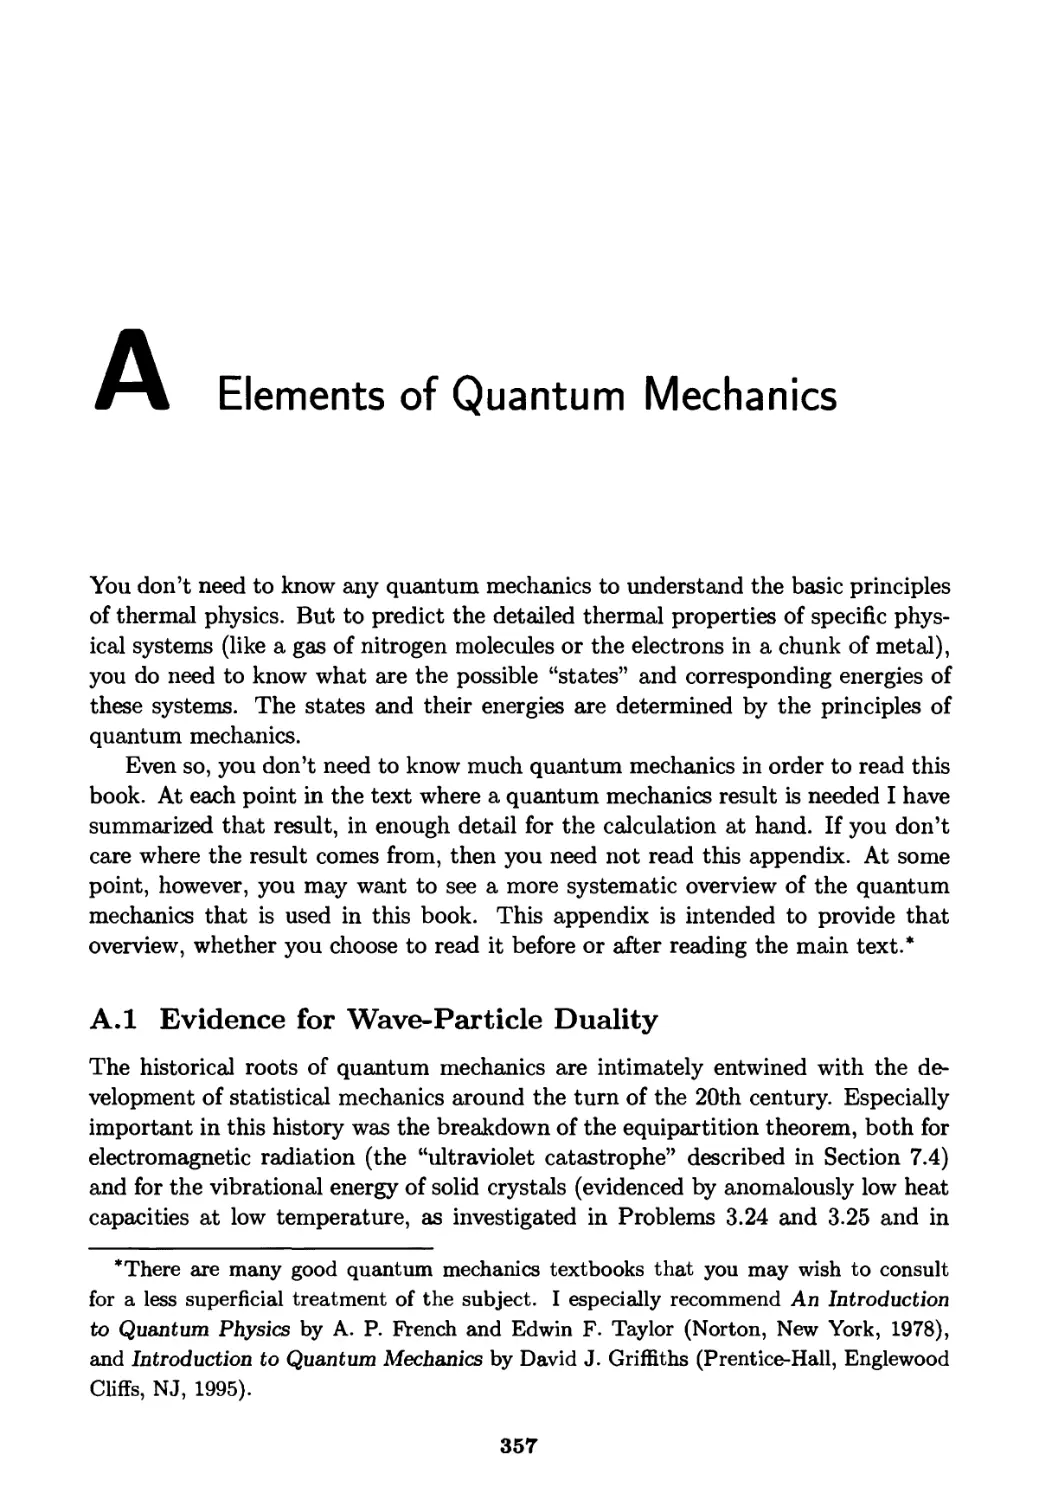 Appendix A. Elements of Quantum Mechanics